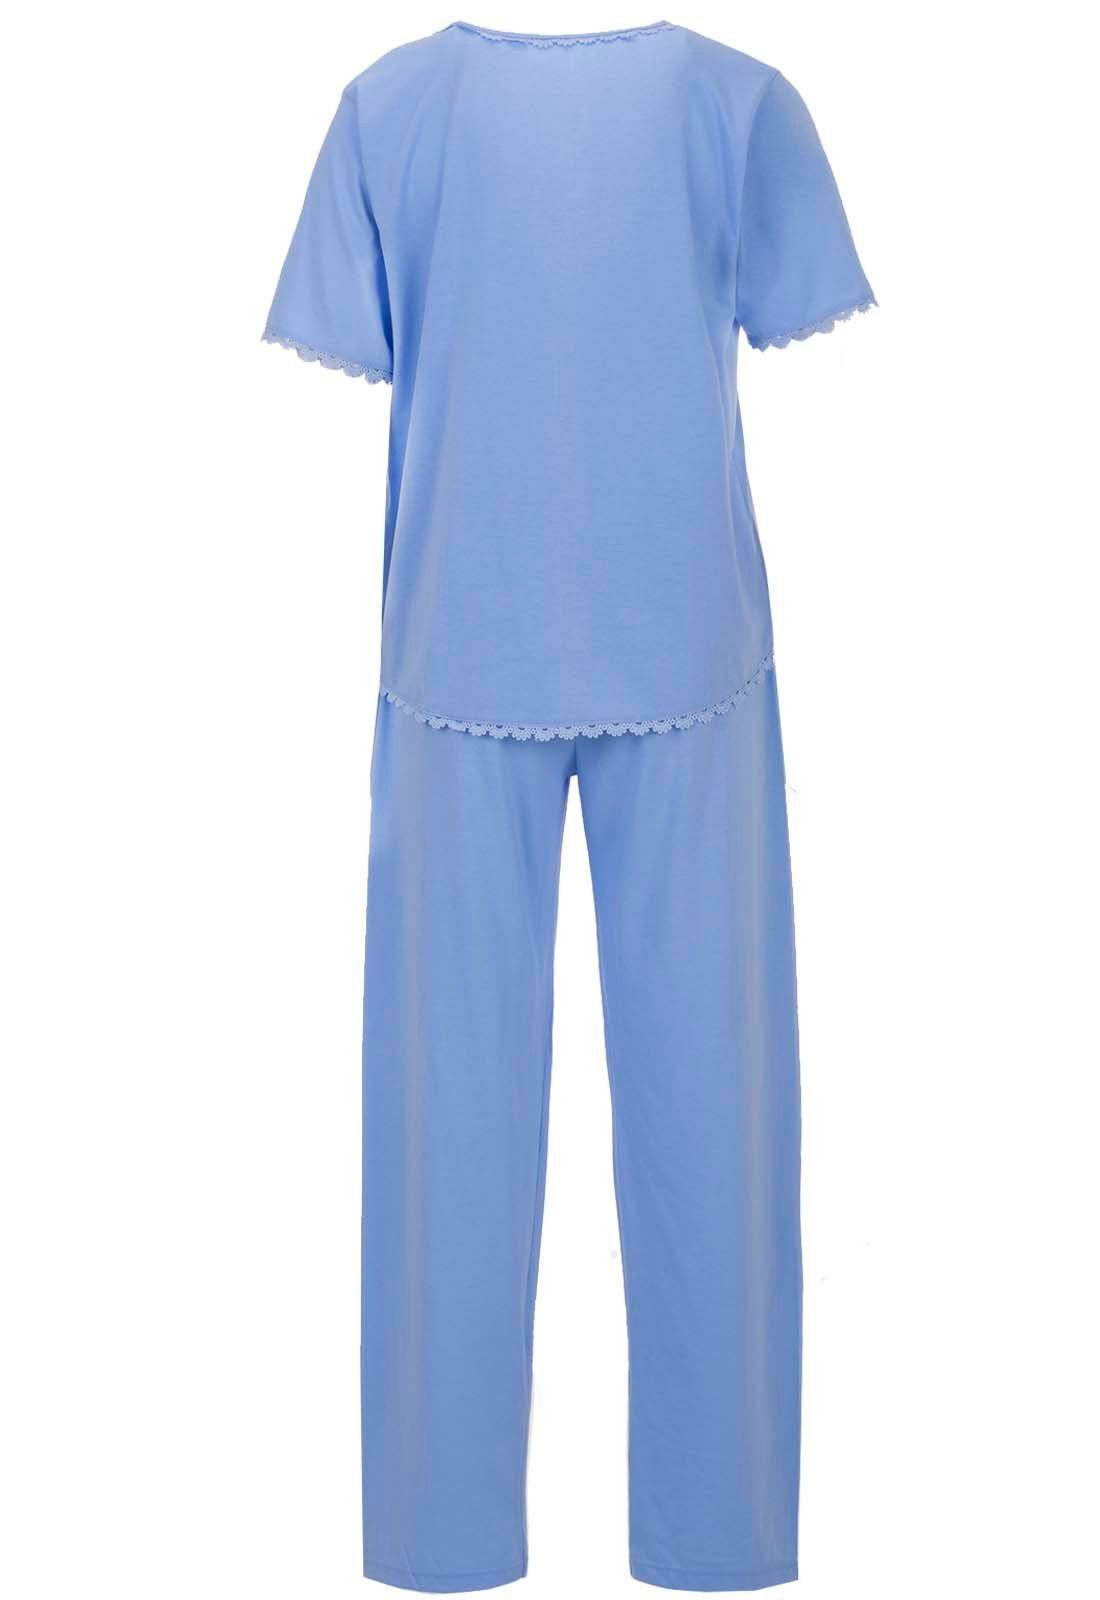 zeitlos Schlafanzug Pyjama Set Herz - Kurzarm Spitze blau